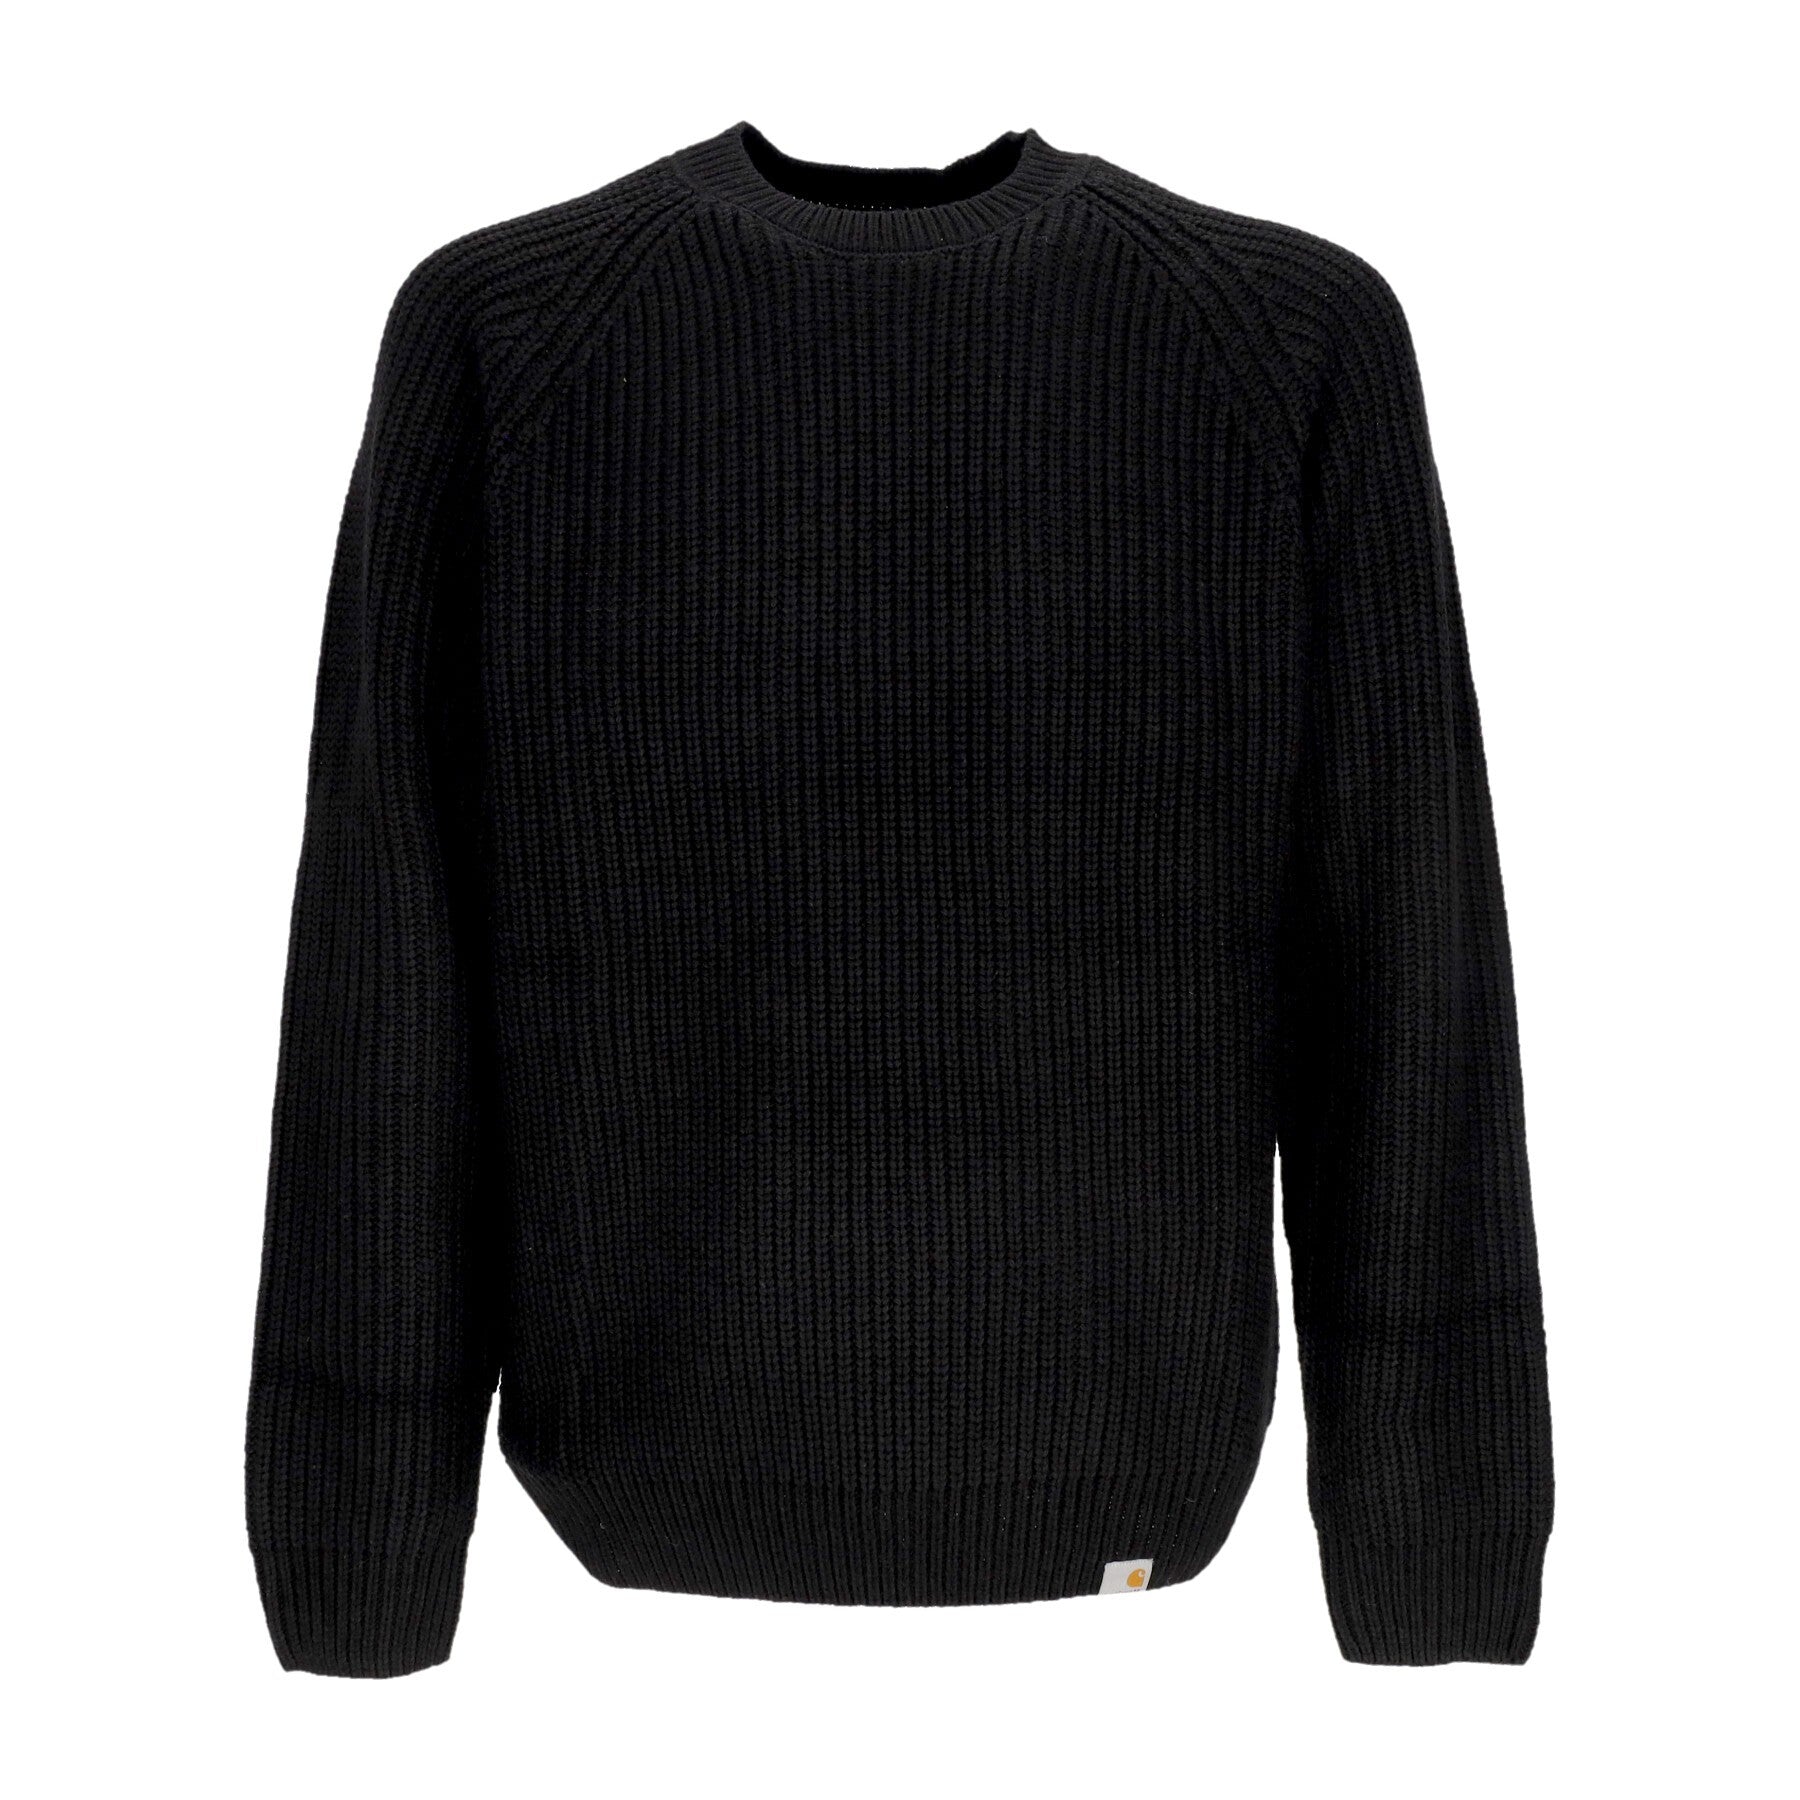 Maglione Uomo Forth Sweater Black I028263